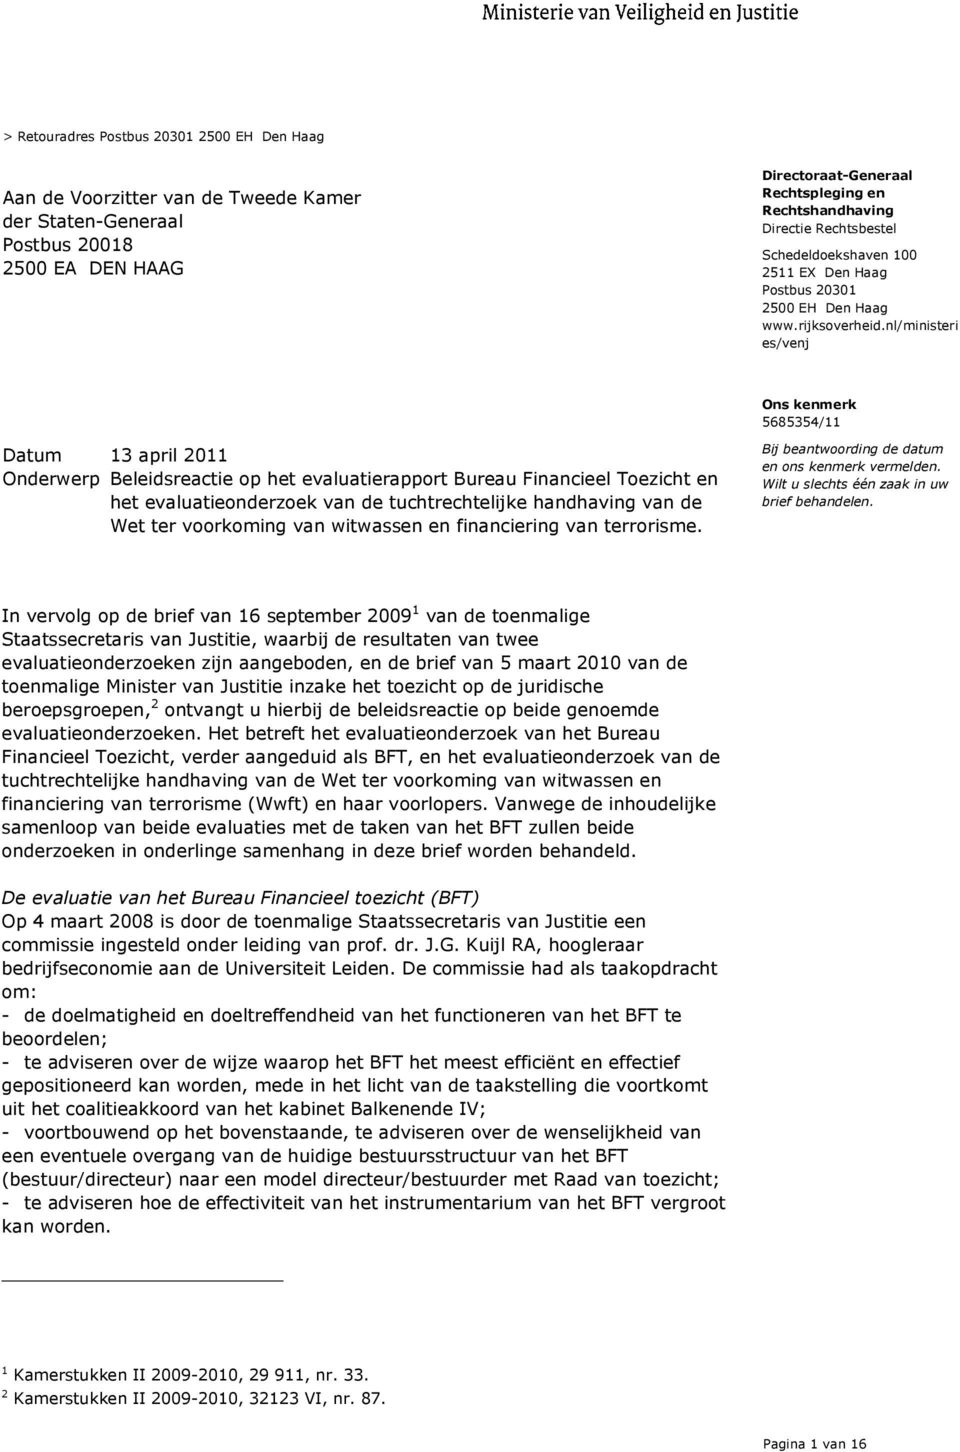 nl/ministeri es/venj Onderwerp Beleidsreactie op het evaluatierapport Bureau Financieel Toezicht en het evaluatieonderzoek van de tuchtrechtelijke handhaving van de Wet ter voorkoming van witwassen